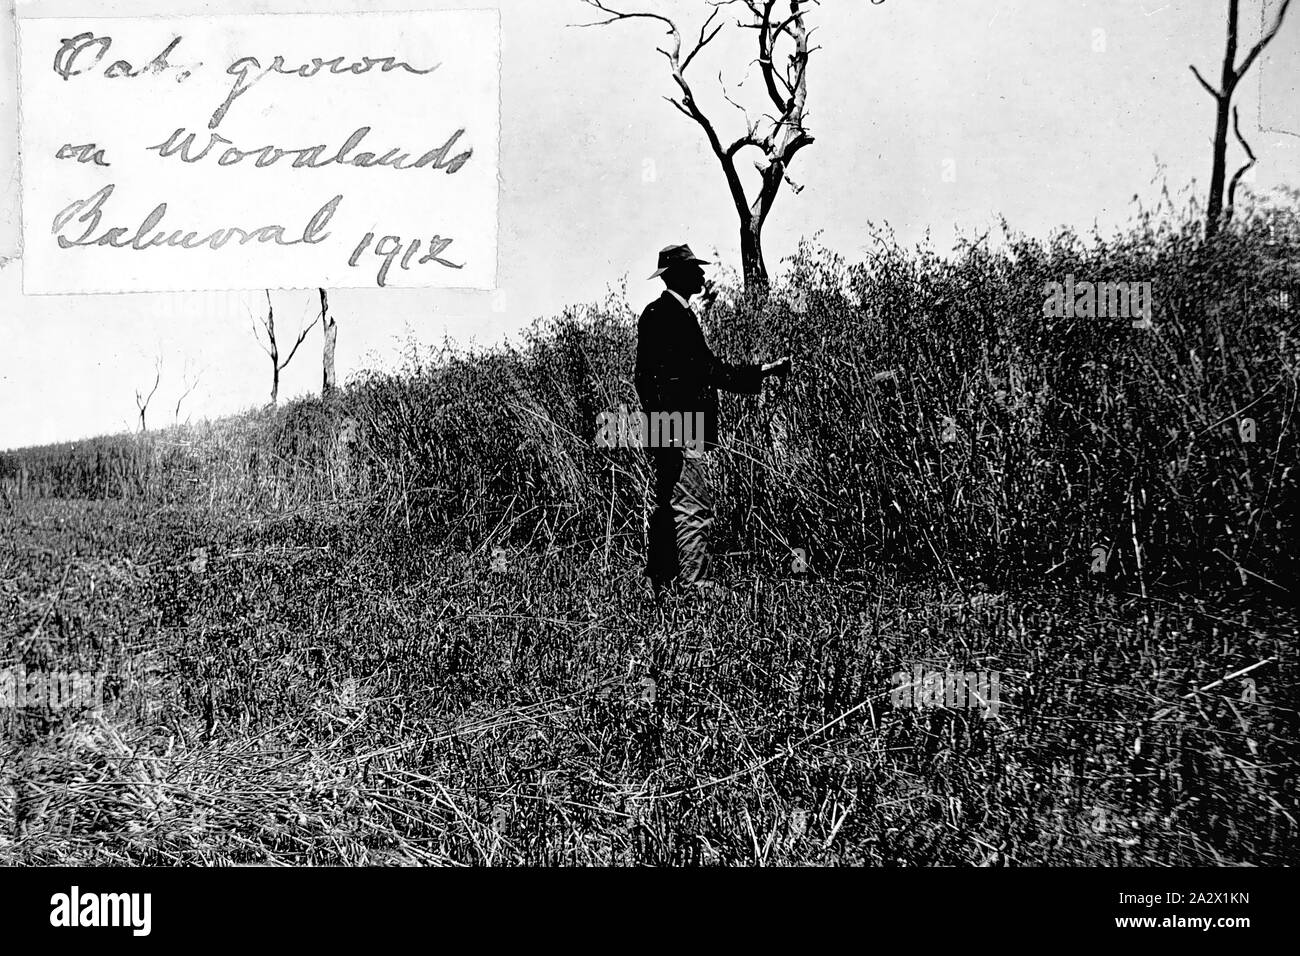 Negative - Hafer Ernte, Balmoral, Victoria, 1912, ein Mann stand neben einer Ernte von Hafer seine Höhe anzugeben. Er war über 6 Meter hoch. Die fruchtart wurde ohne Superphosphate gewachsen Stockfoto